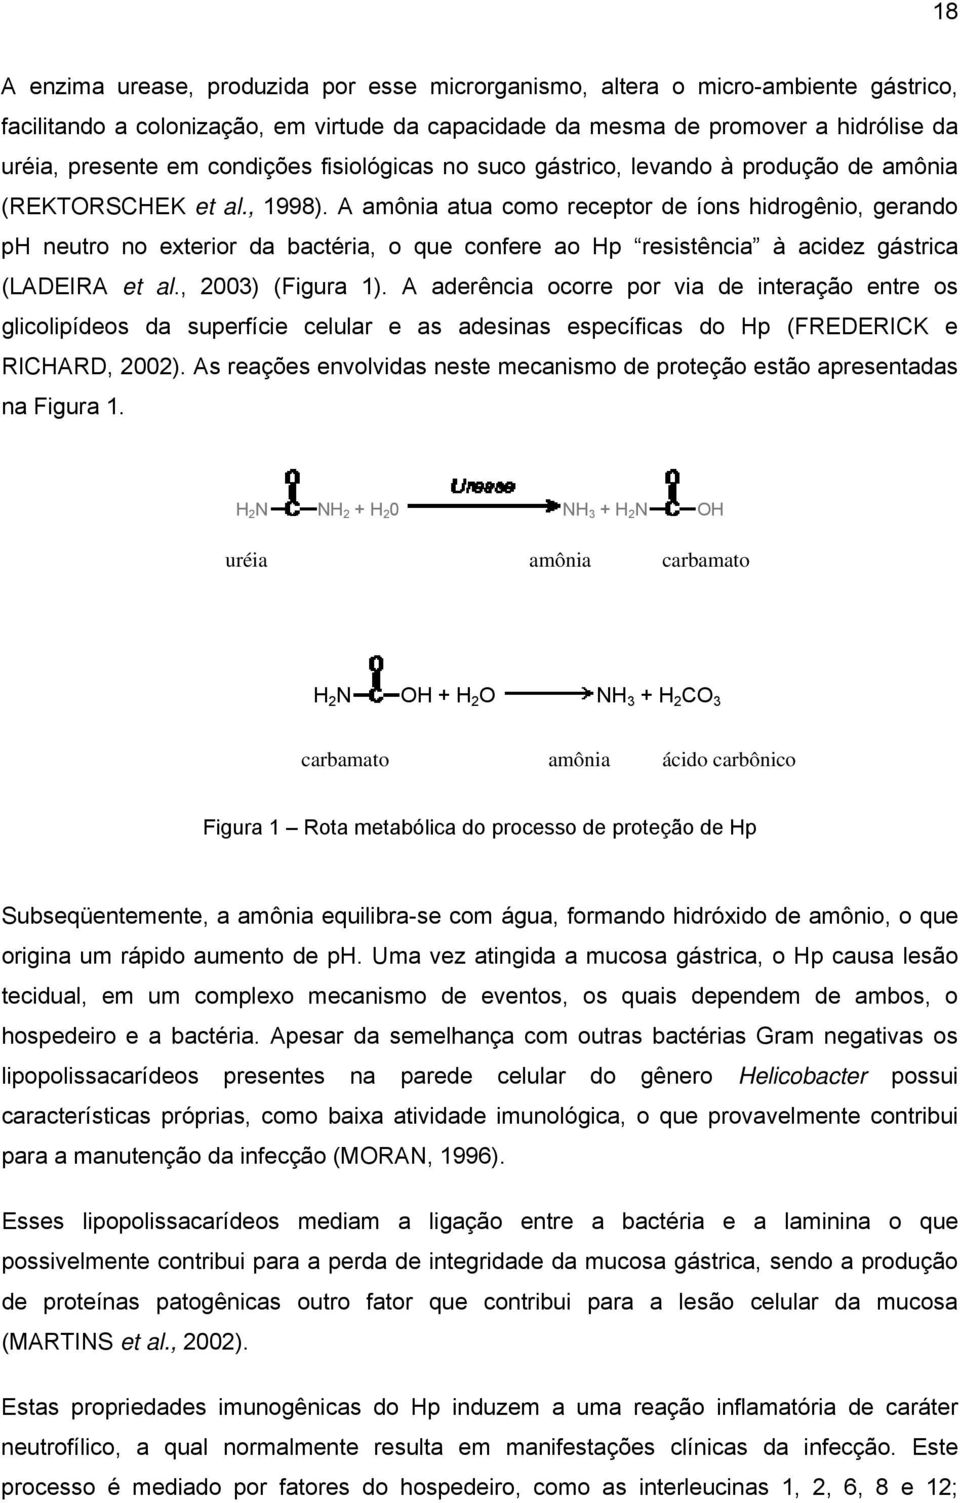 A amônia atua como receptor de íons hidrogênio, gerando ph neutro no exterior da bactéria, o que confere ao Hp resistência à acidez gástrica (LADEIRA et al., 2003) (Figura 1).